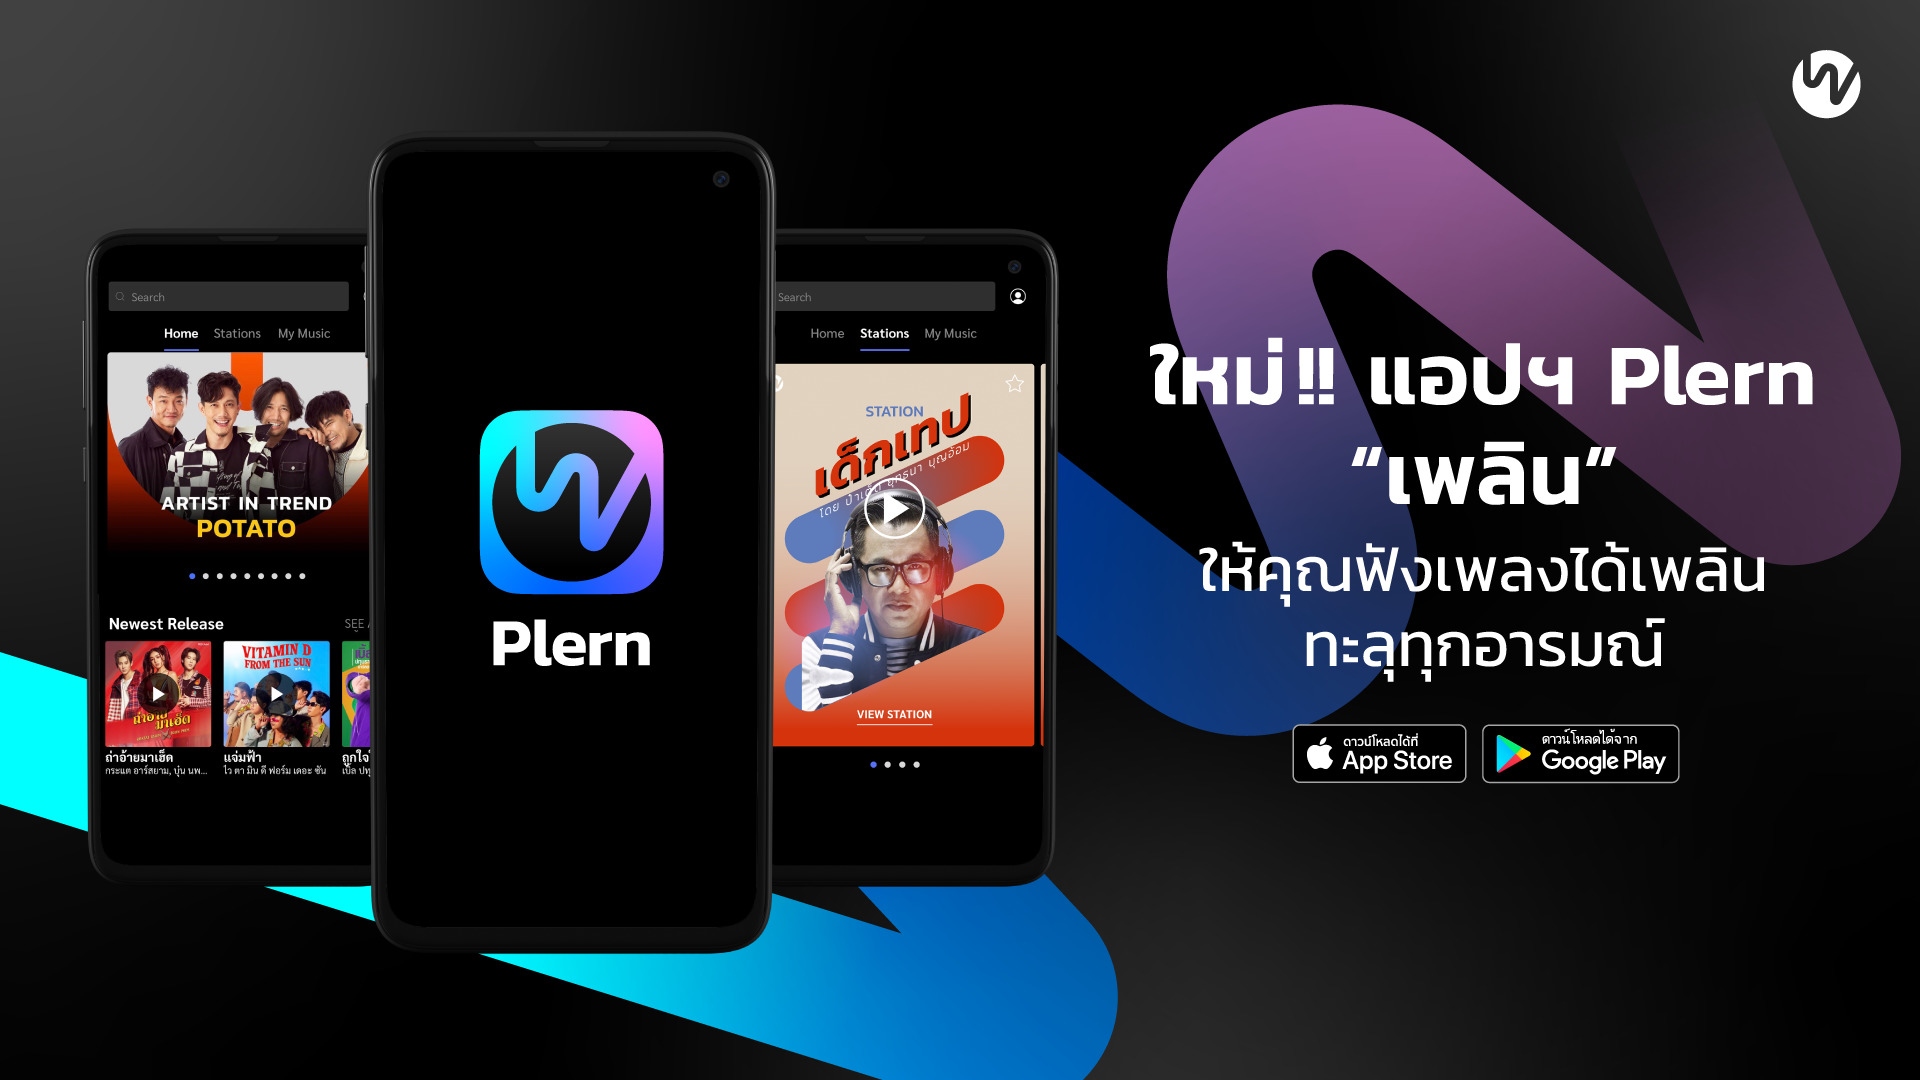 เขย่าวงการเพลงไทย! เปิดตัว “Plern (เพลิน)” แอปฯ ฟังเพลง จากใจคนทำเพลง เพื่อคอเพลงชาวไทย